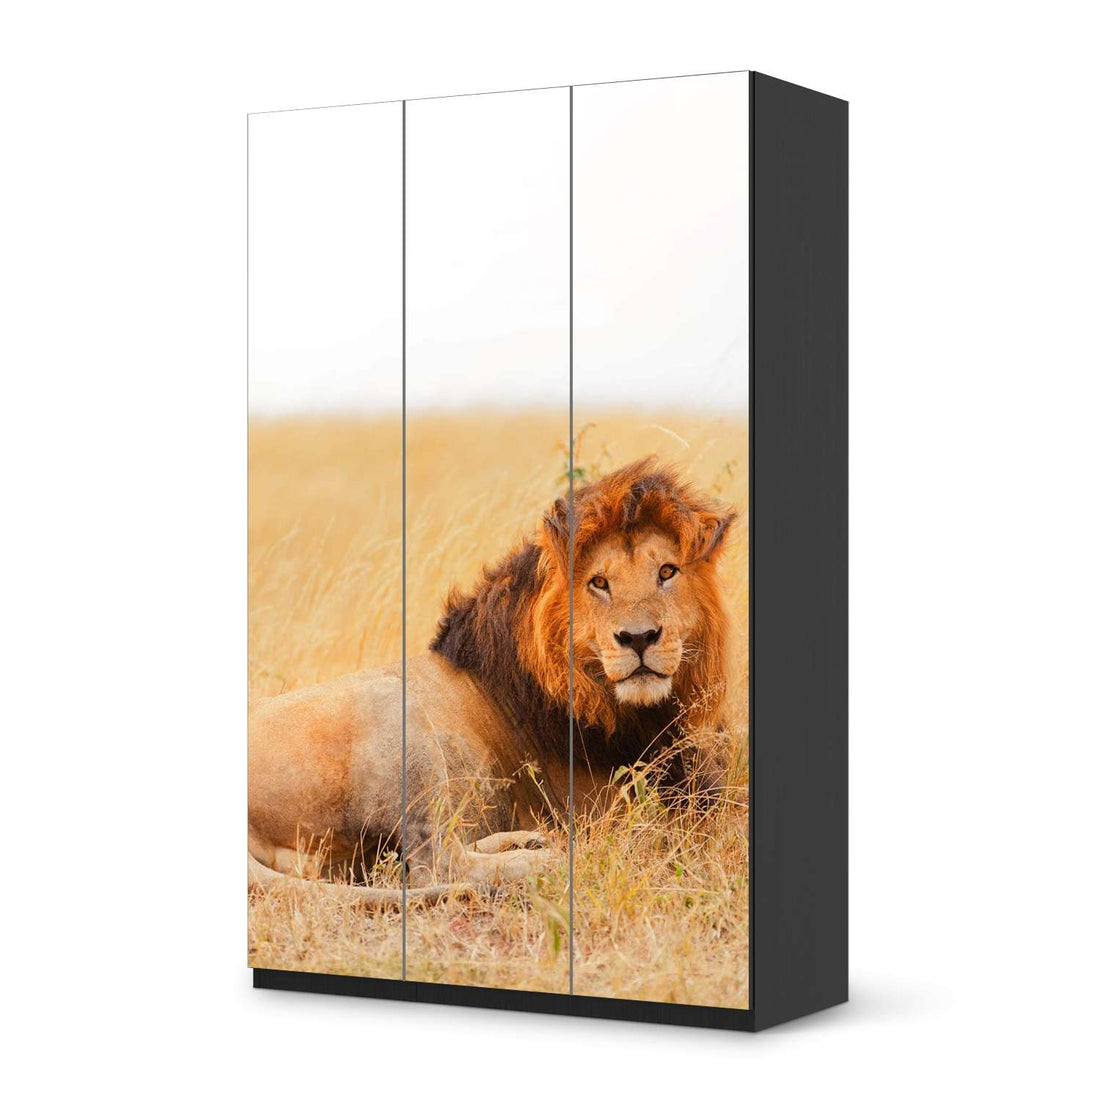 Selbstklebende Folie Lion King - IKEA Pax Schrank 236 cm Höhe - 3 Türen - schwarz